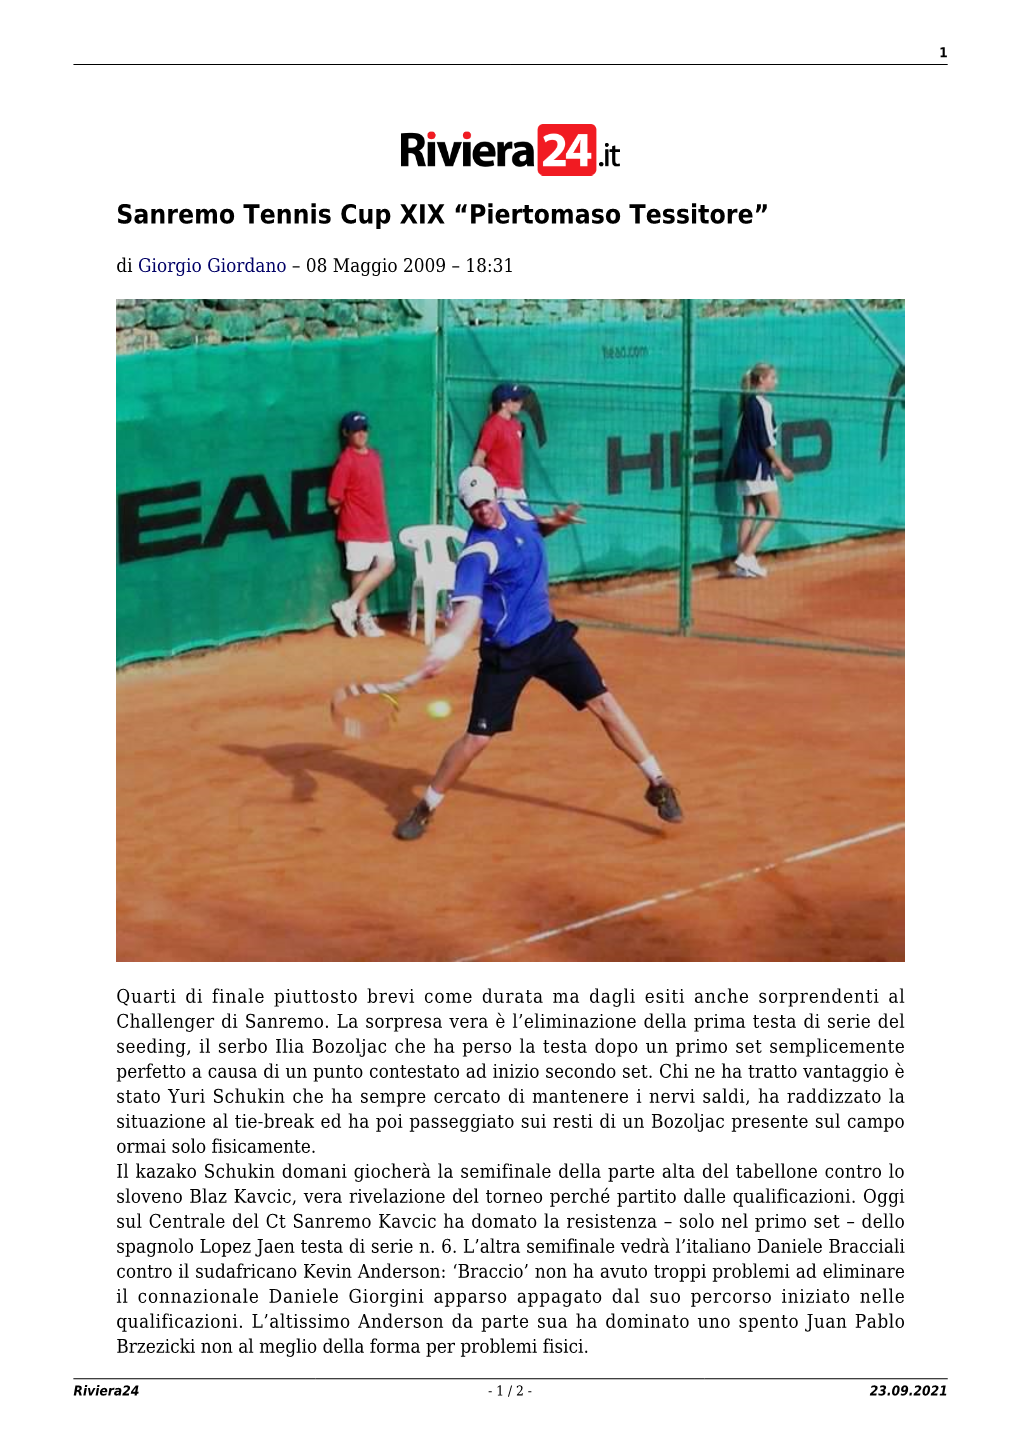 Sanremo Tennis Cup XIX “Piertomaso Tessitore”